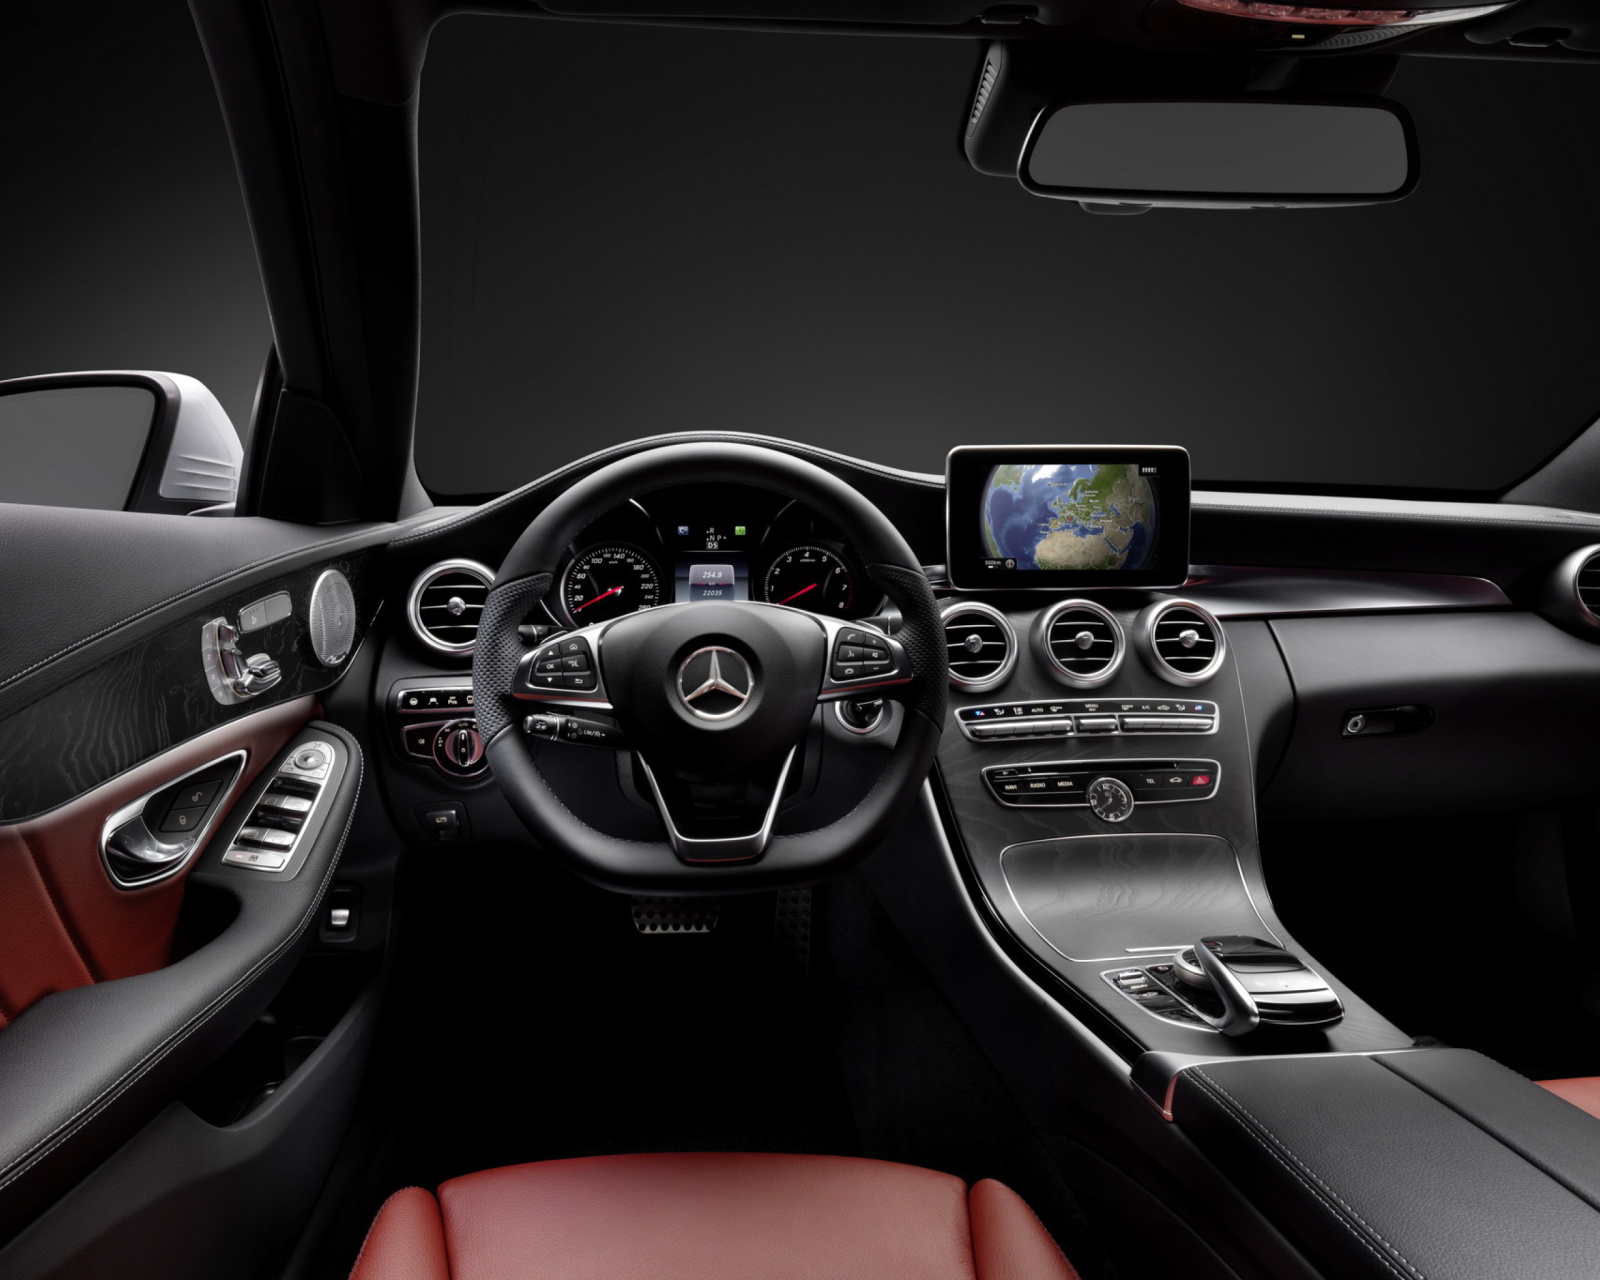 Mercedes Benz C250 AMG W205 2014 Luxury Interior screenshot #1 1600x1280